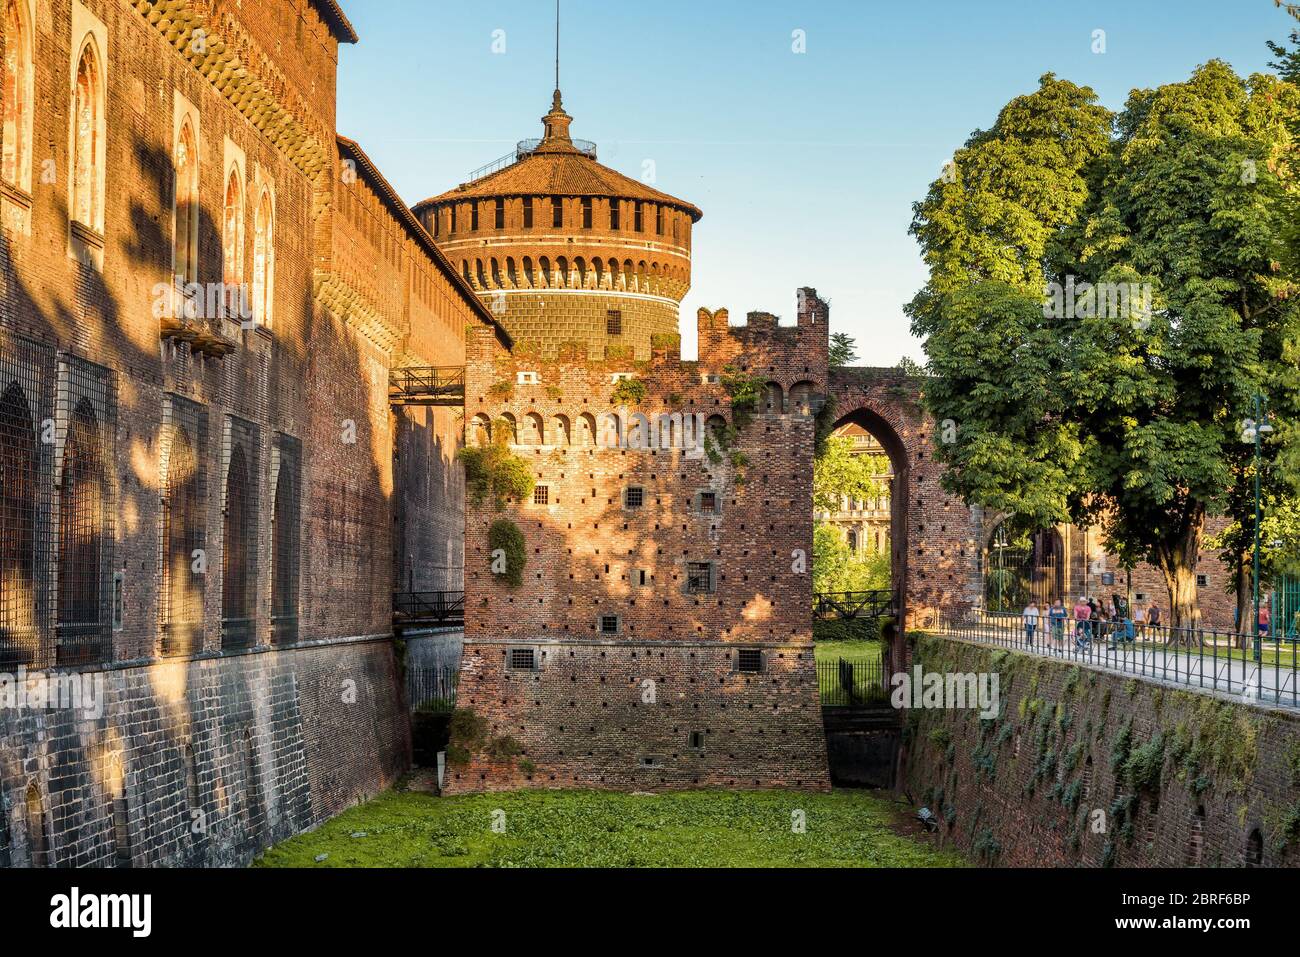 Sforza Castel (Castello Sforzesco) in Milan, Italy. This castle was built in the 15th century by Francesco Sforza, Duke of Milan. Stock Photo